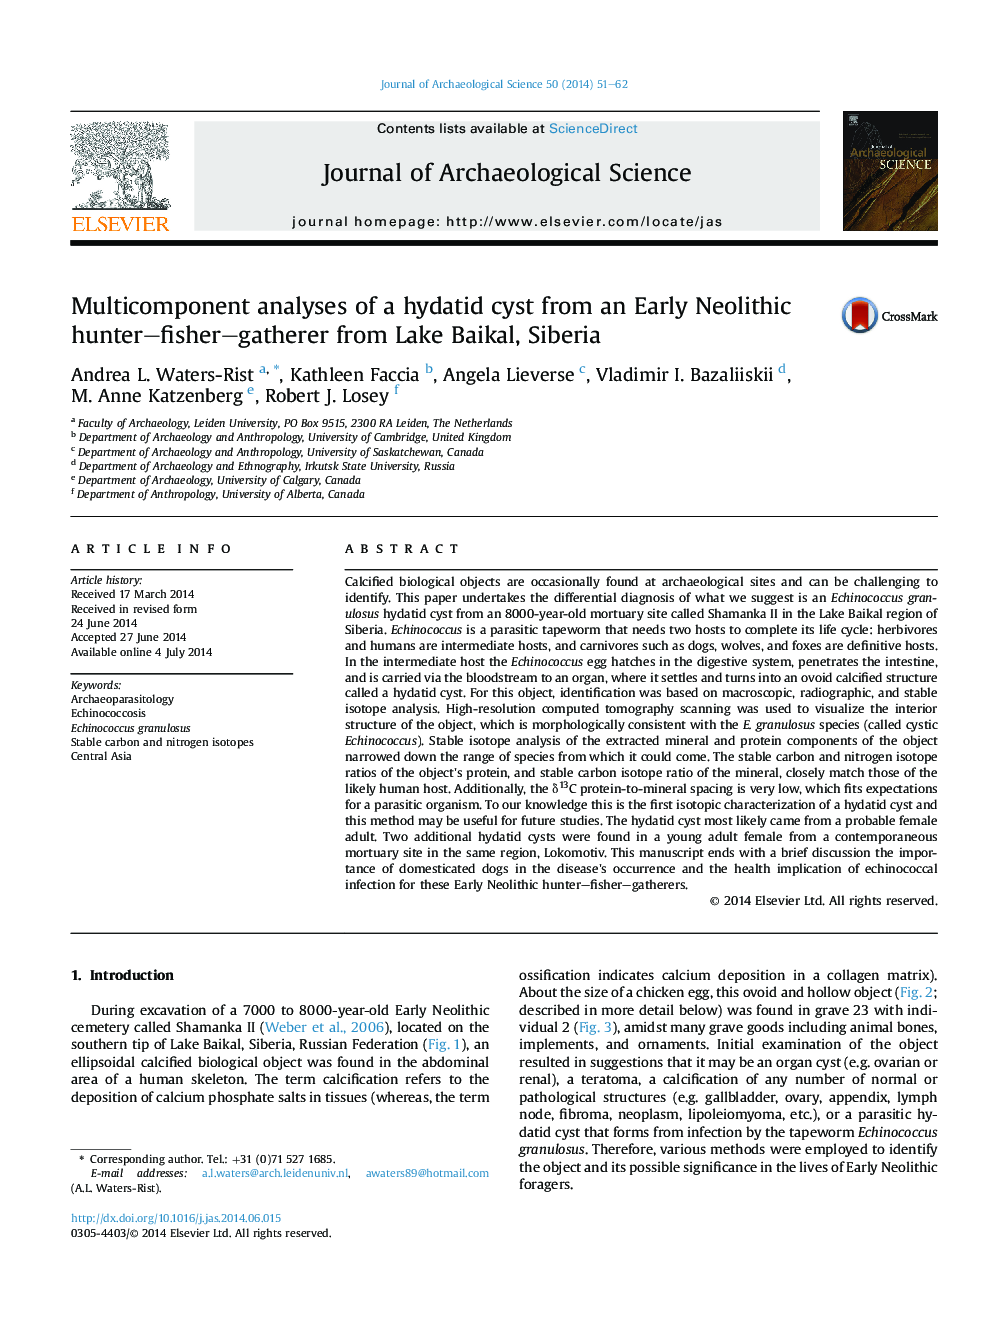 تجزیه و تحلیل چندمرحلهای از یک کیت هیداتید از یک شکارچی ماهیگیری نوین اولیه از دریاچه بایکال، سیبری 